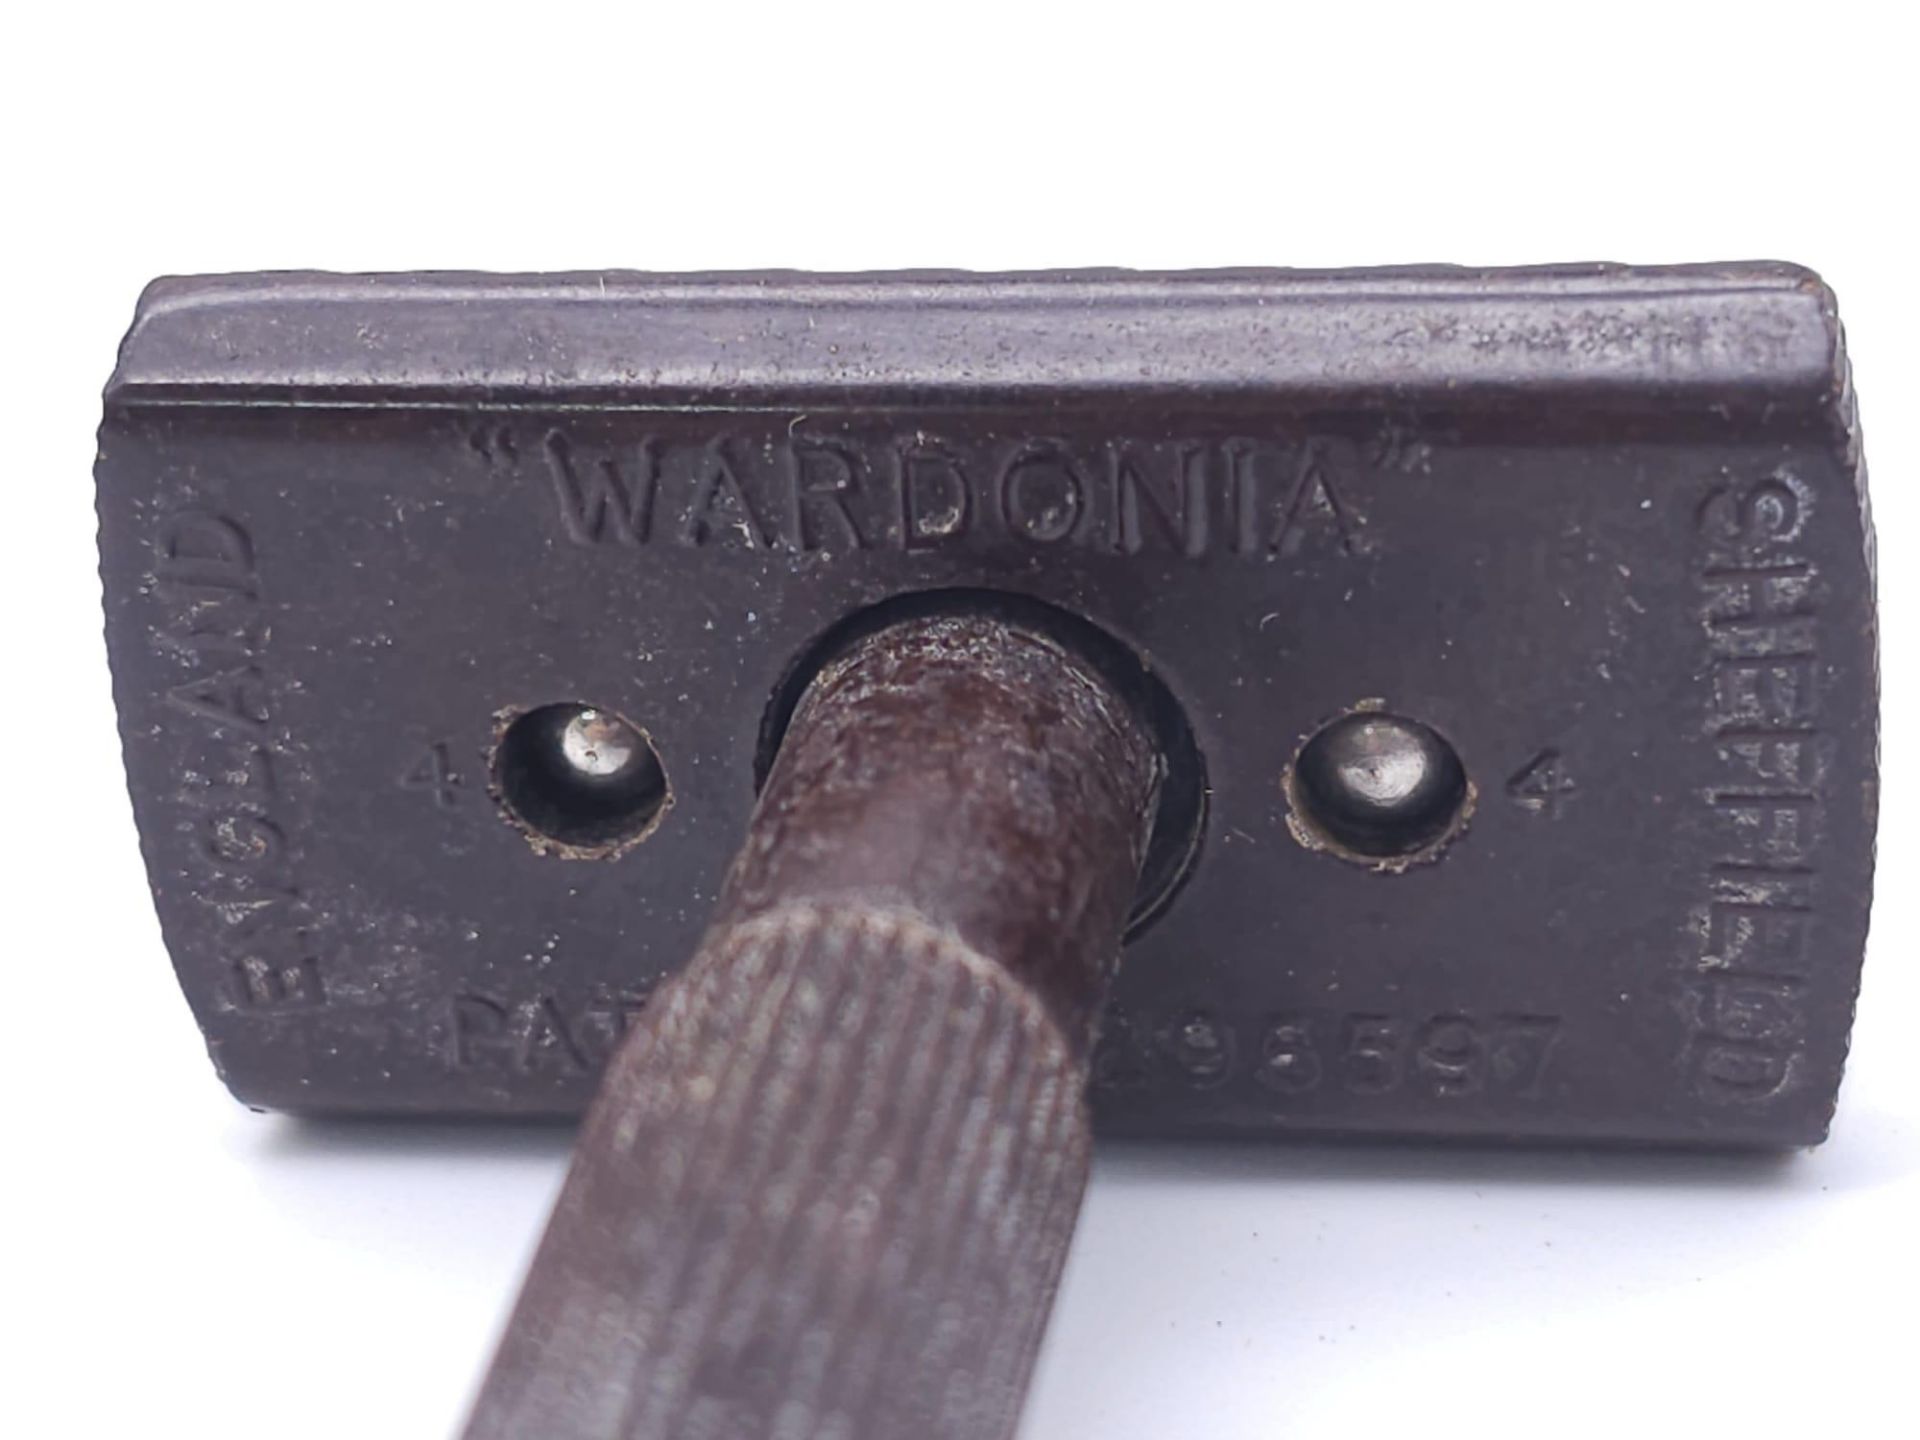 WW2 British Shaving Kit, sent to a Prisoner of War in German containing a hidden compass under the - Bild 4 aus 19